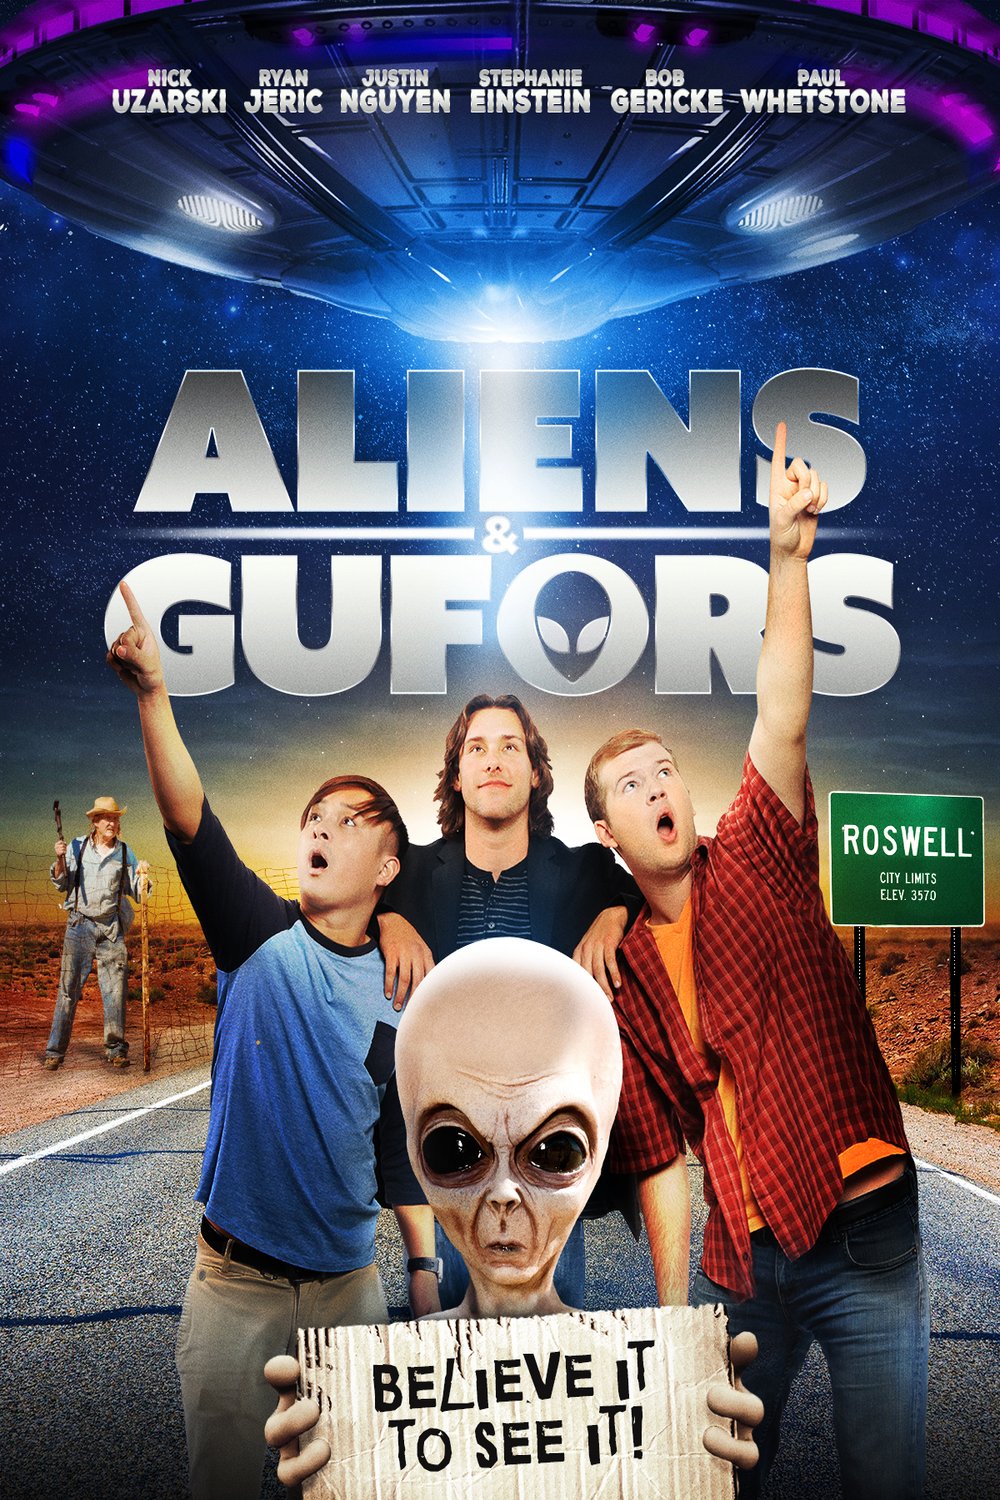 L'affiche du film Aliens and Gufors